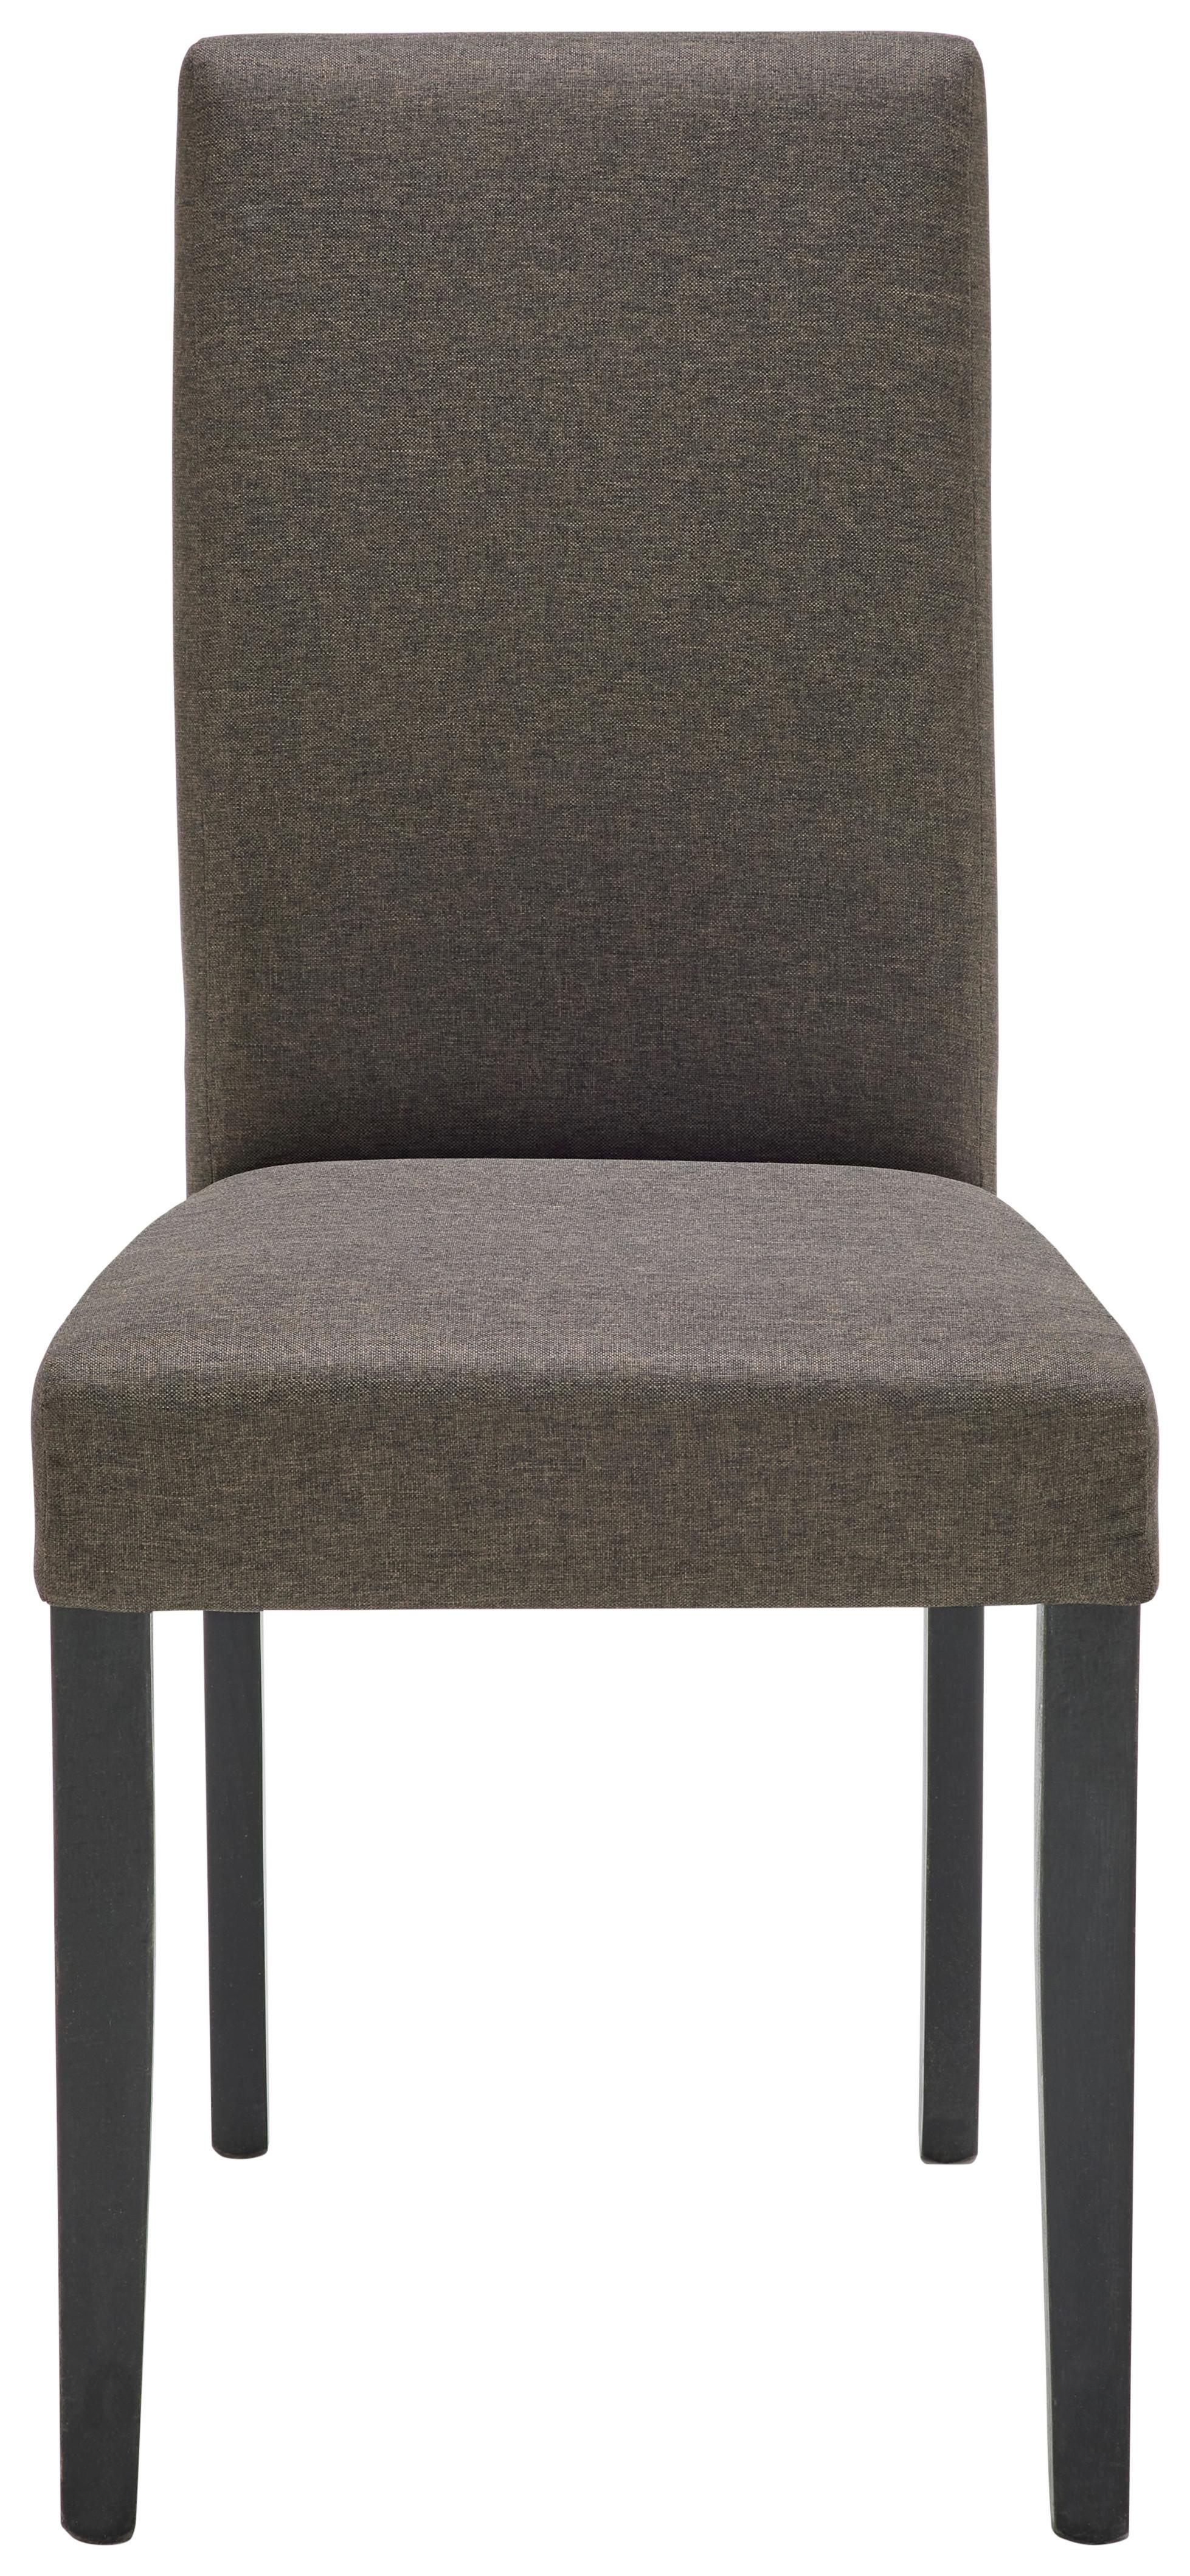 Židle John - černá/barvy vlašských ořechů, Konvenční, kompozitní dřevo/textil (43,5/94/59cm)